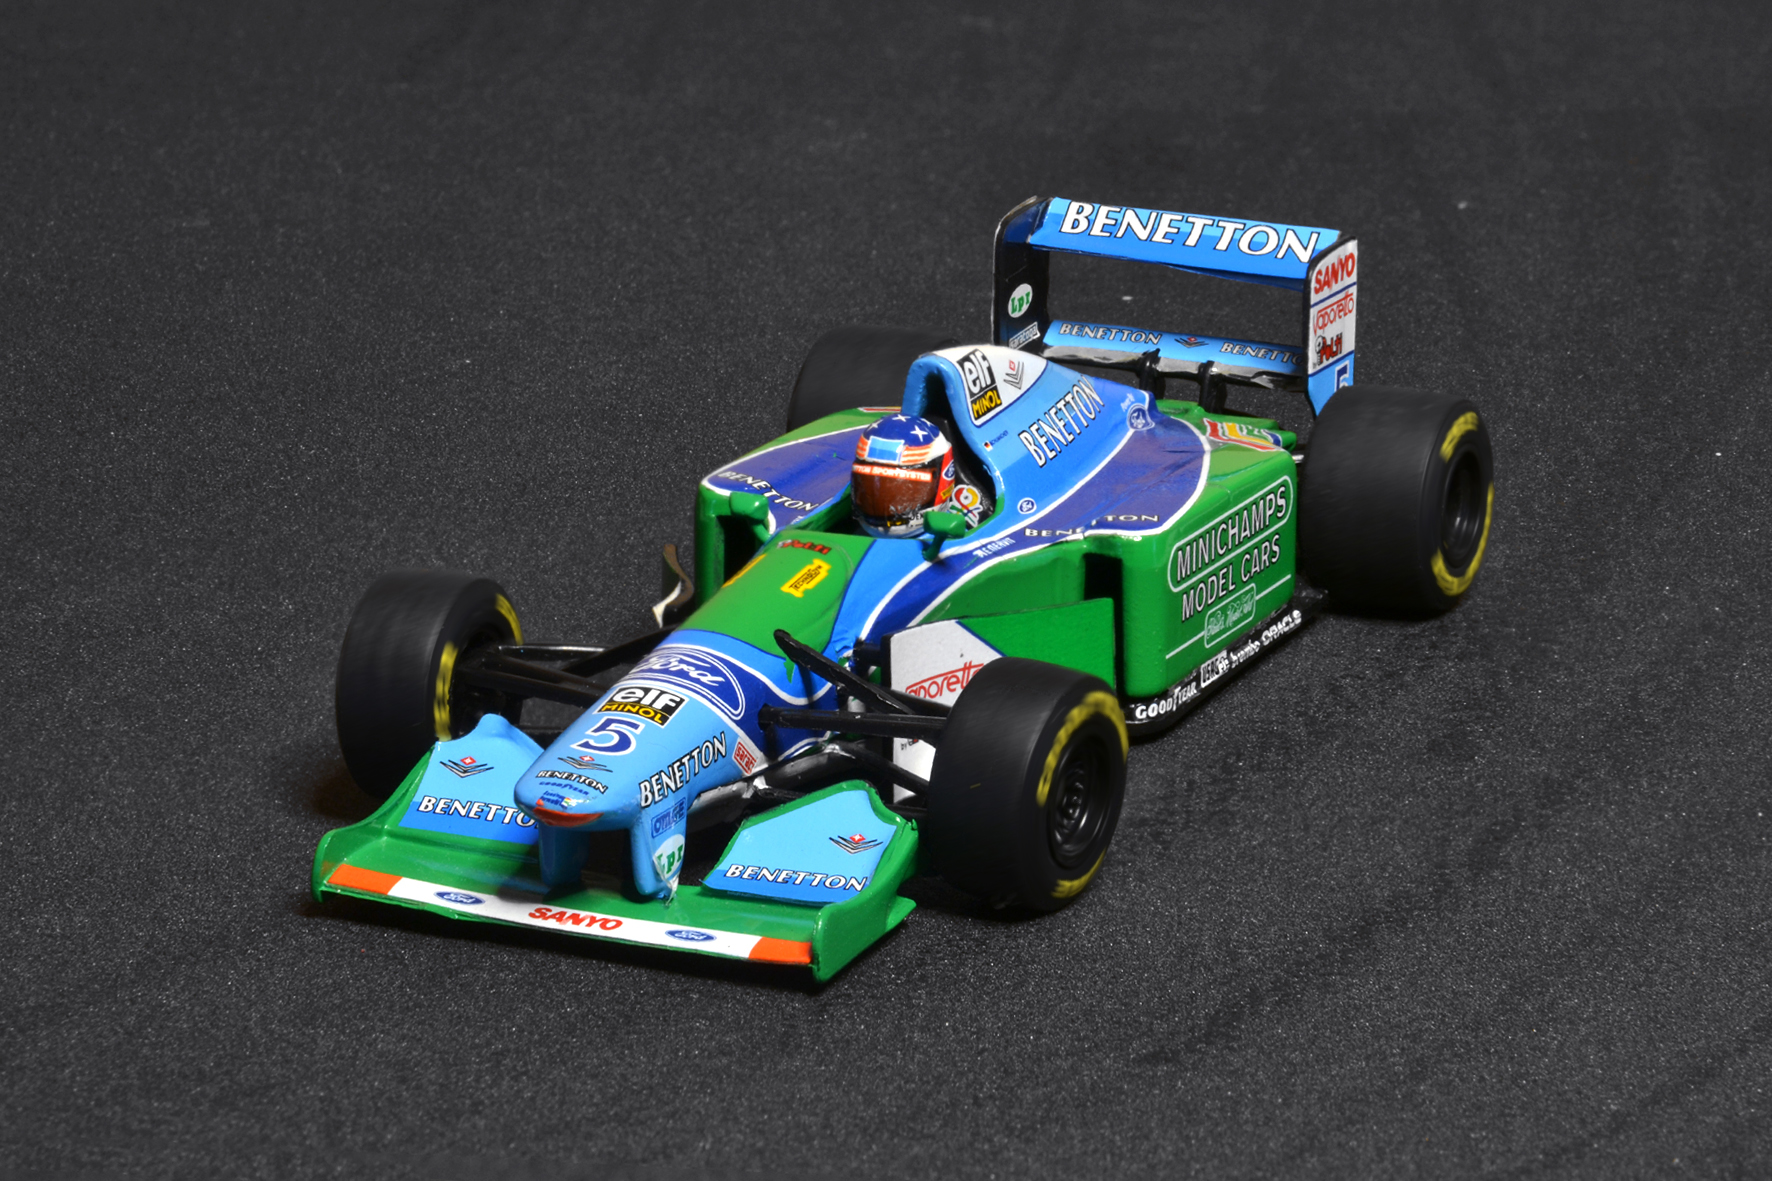 Benetton B194 Michael Schumacher 1994 - Minichamps 1:43